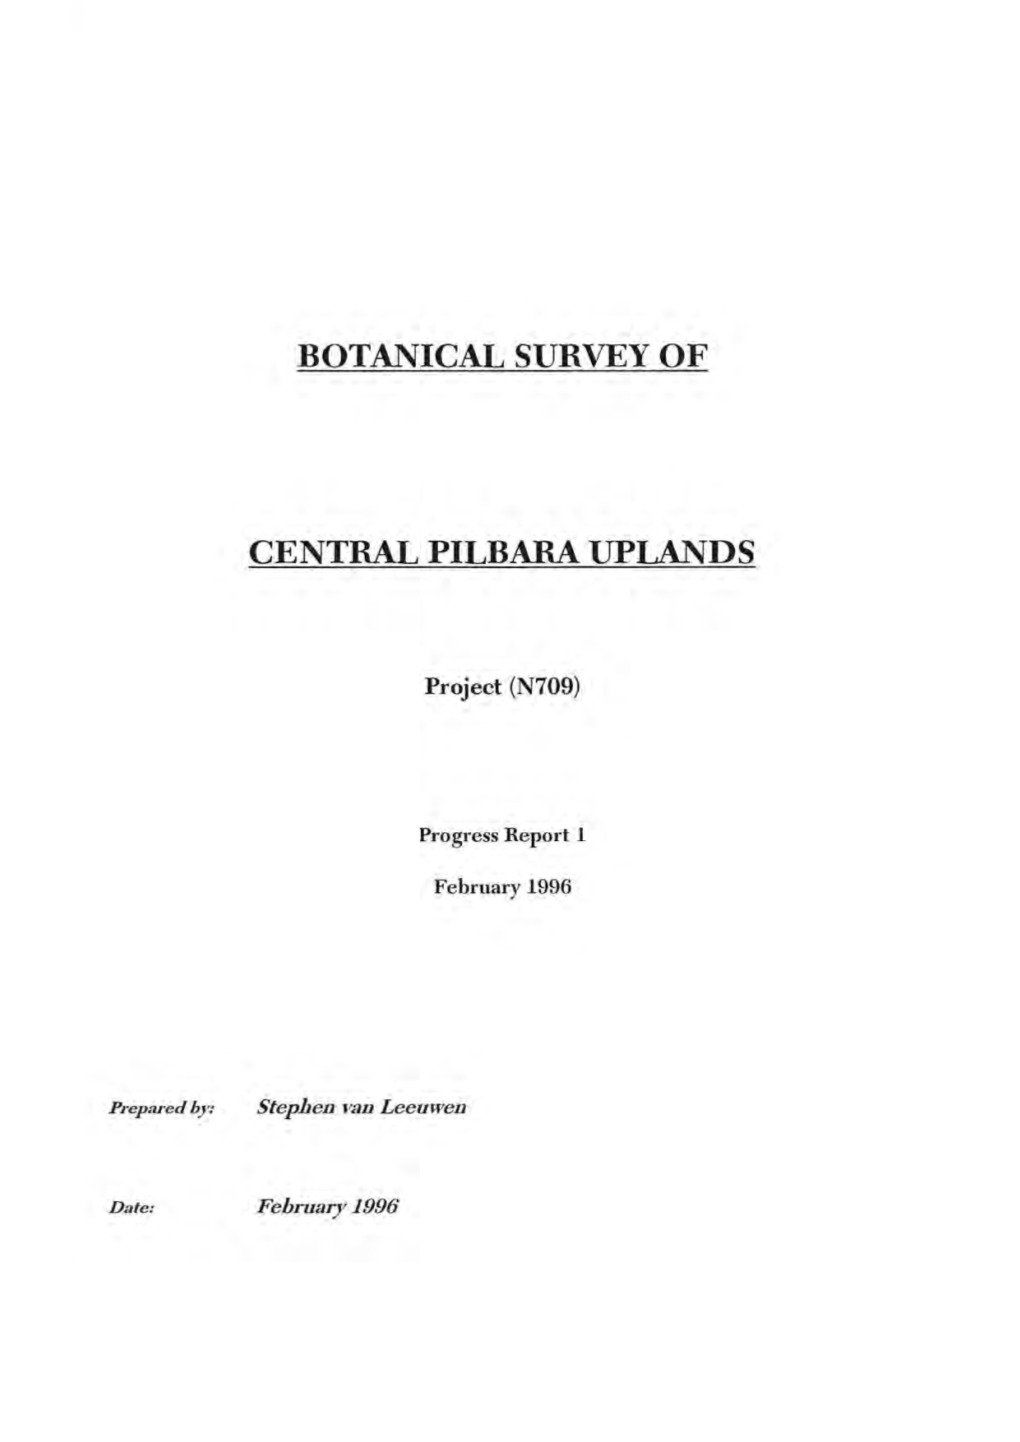 Botanical Survey of Central Pilbara Uplands